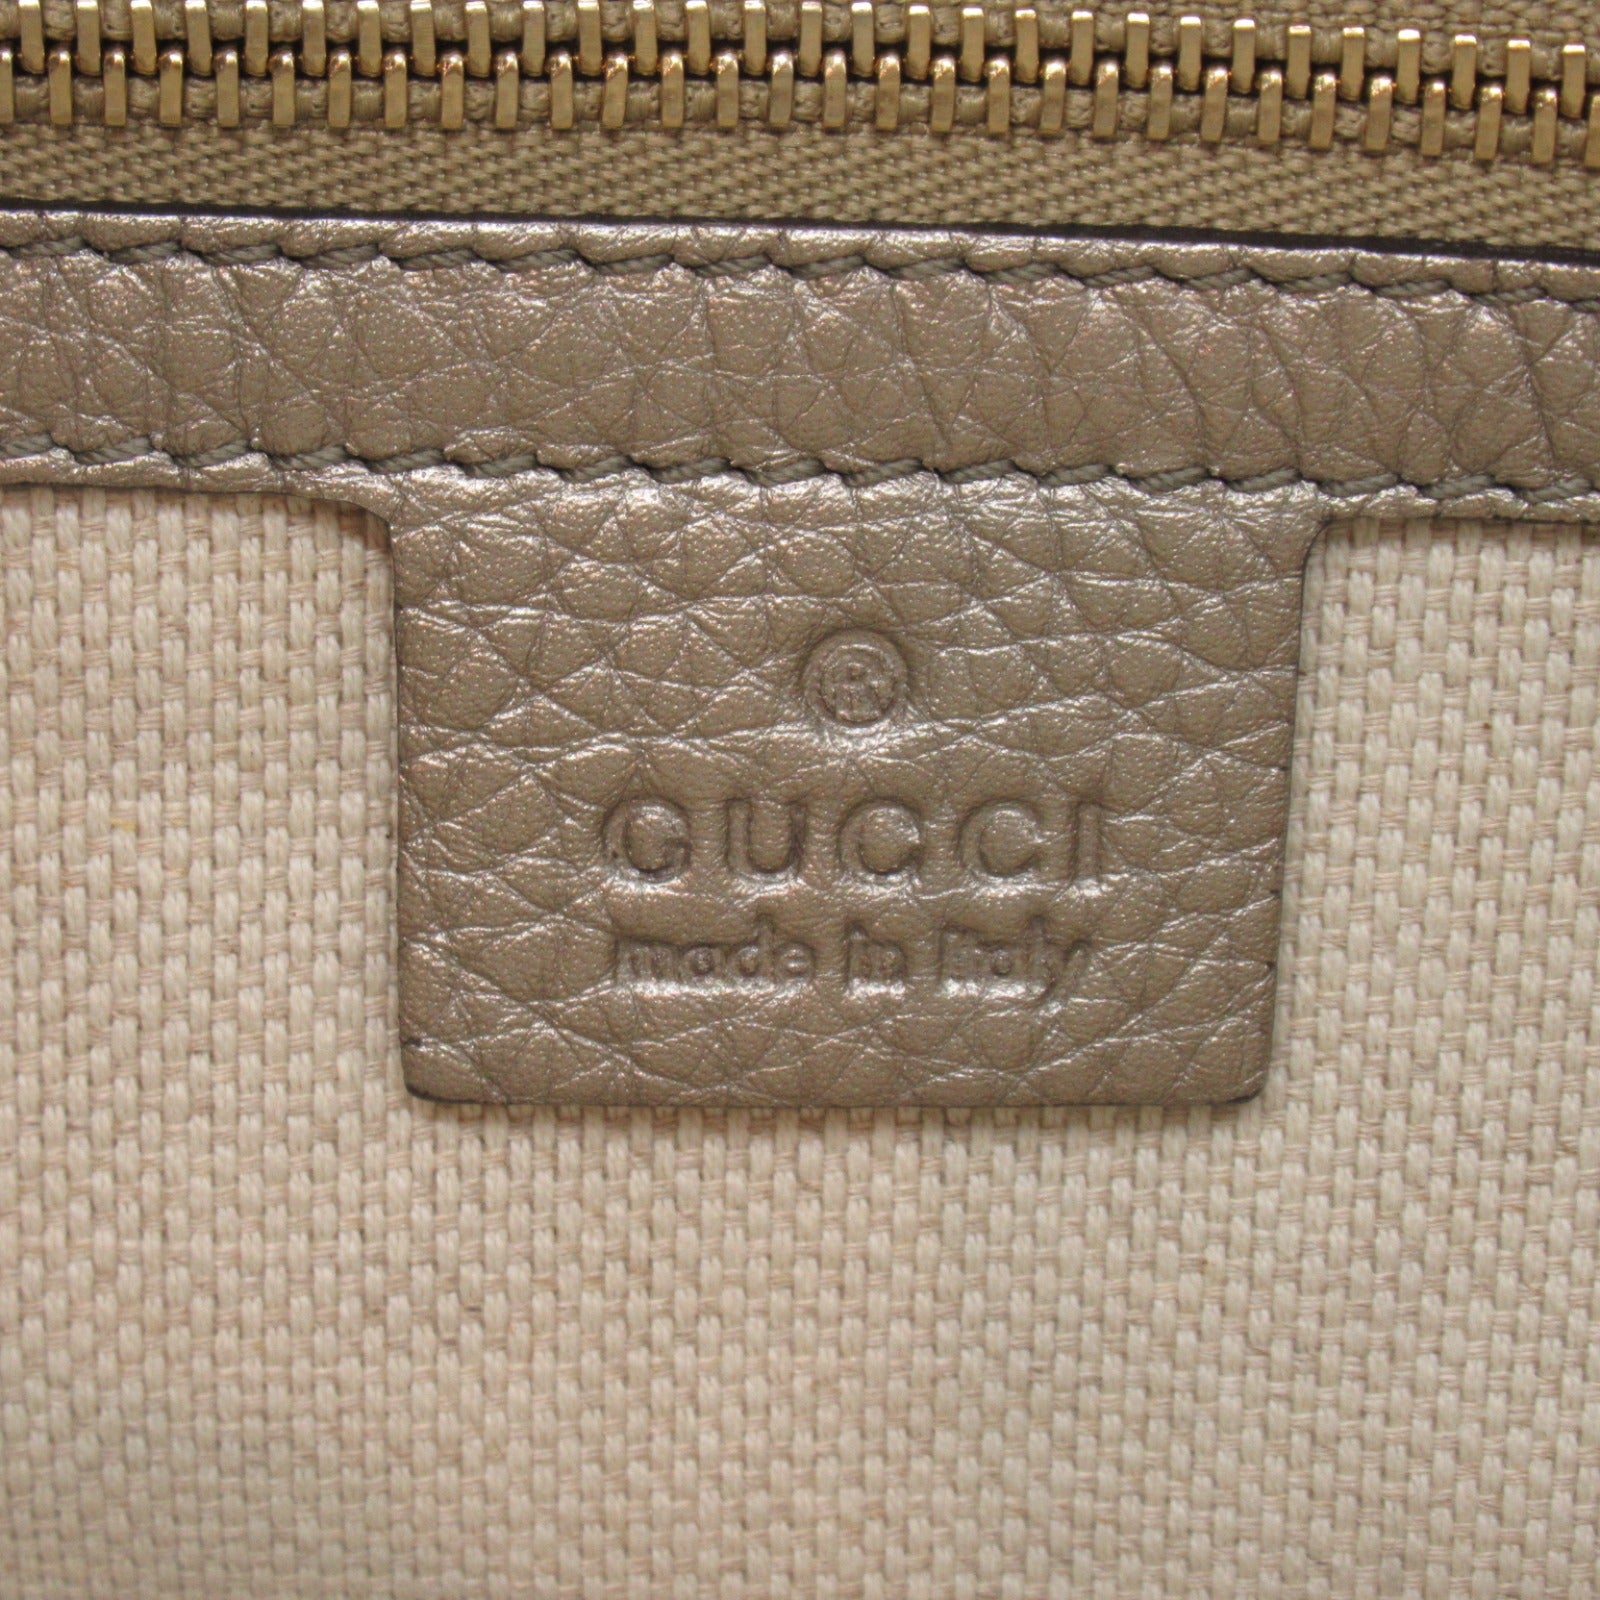 Gucci Gucci 2W Tote Bag Handbag Leather  G 369176